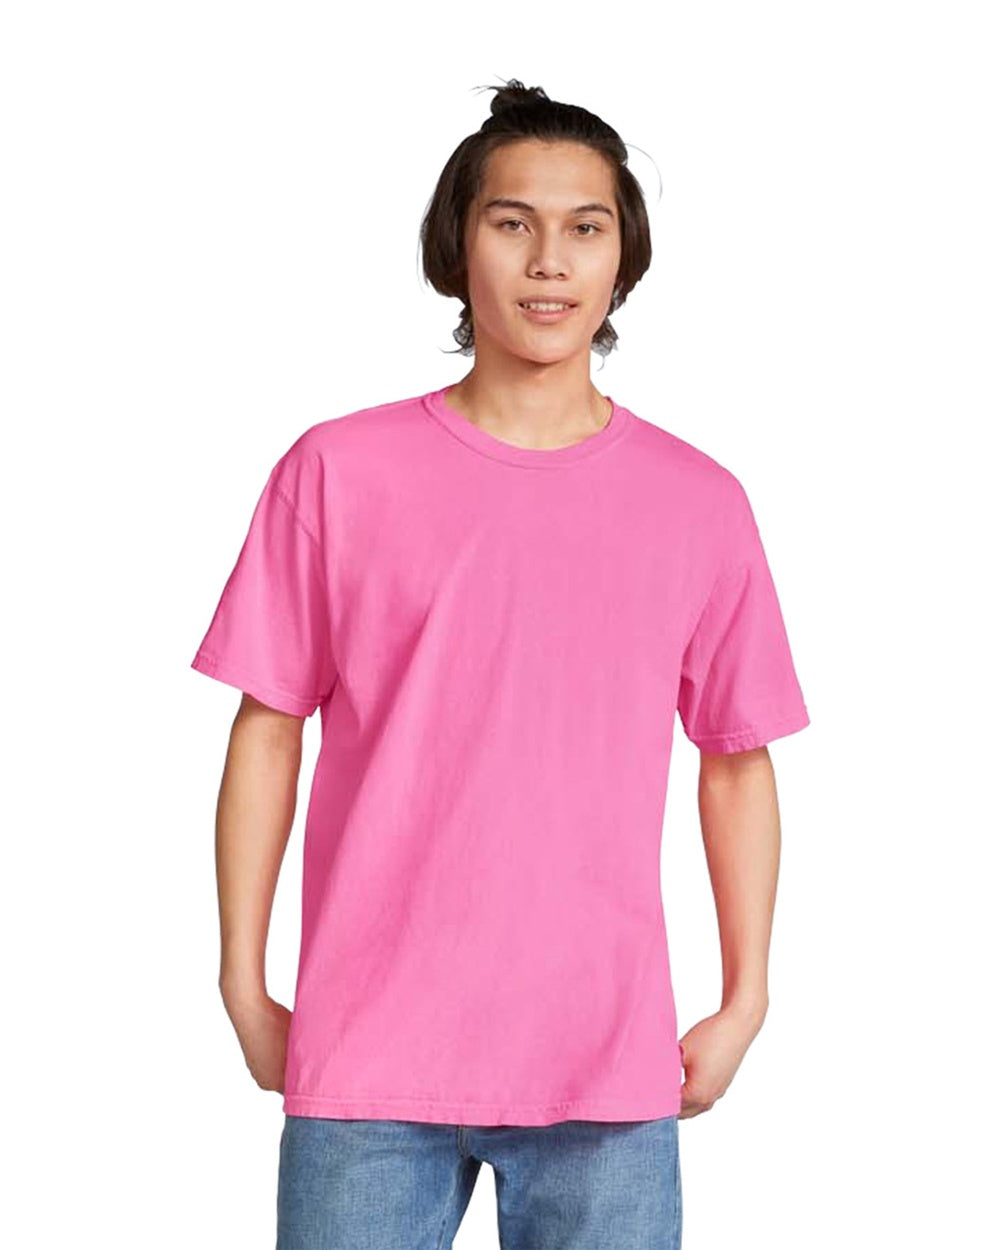 Neon Pink Comfort Colors Heavyweight Unisex Tee